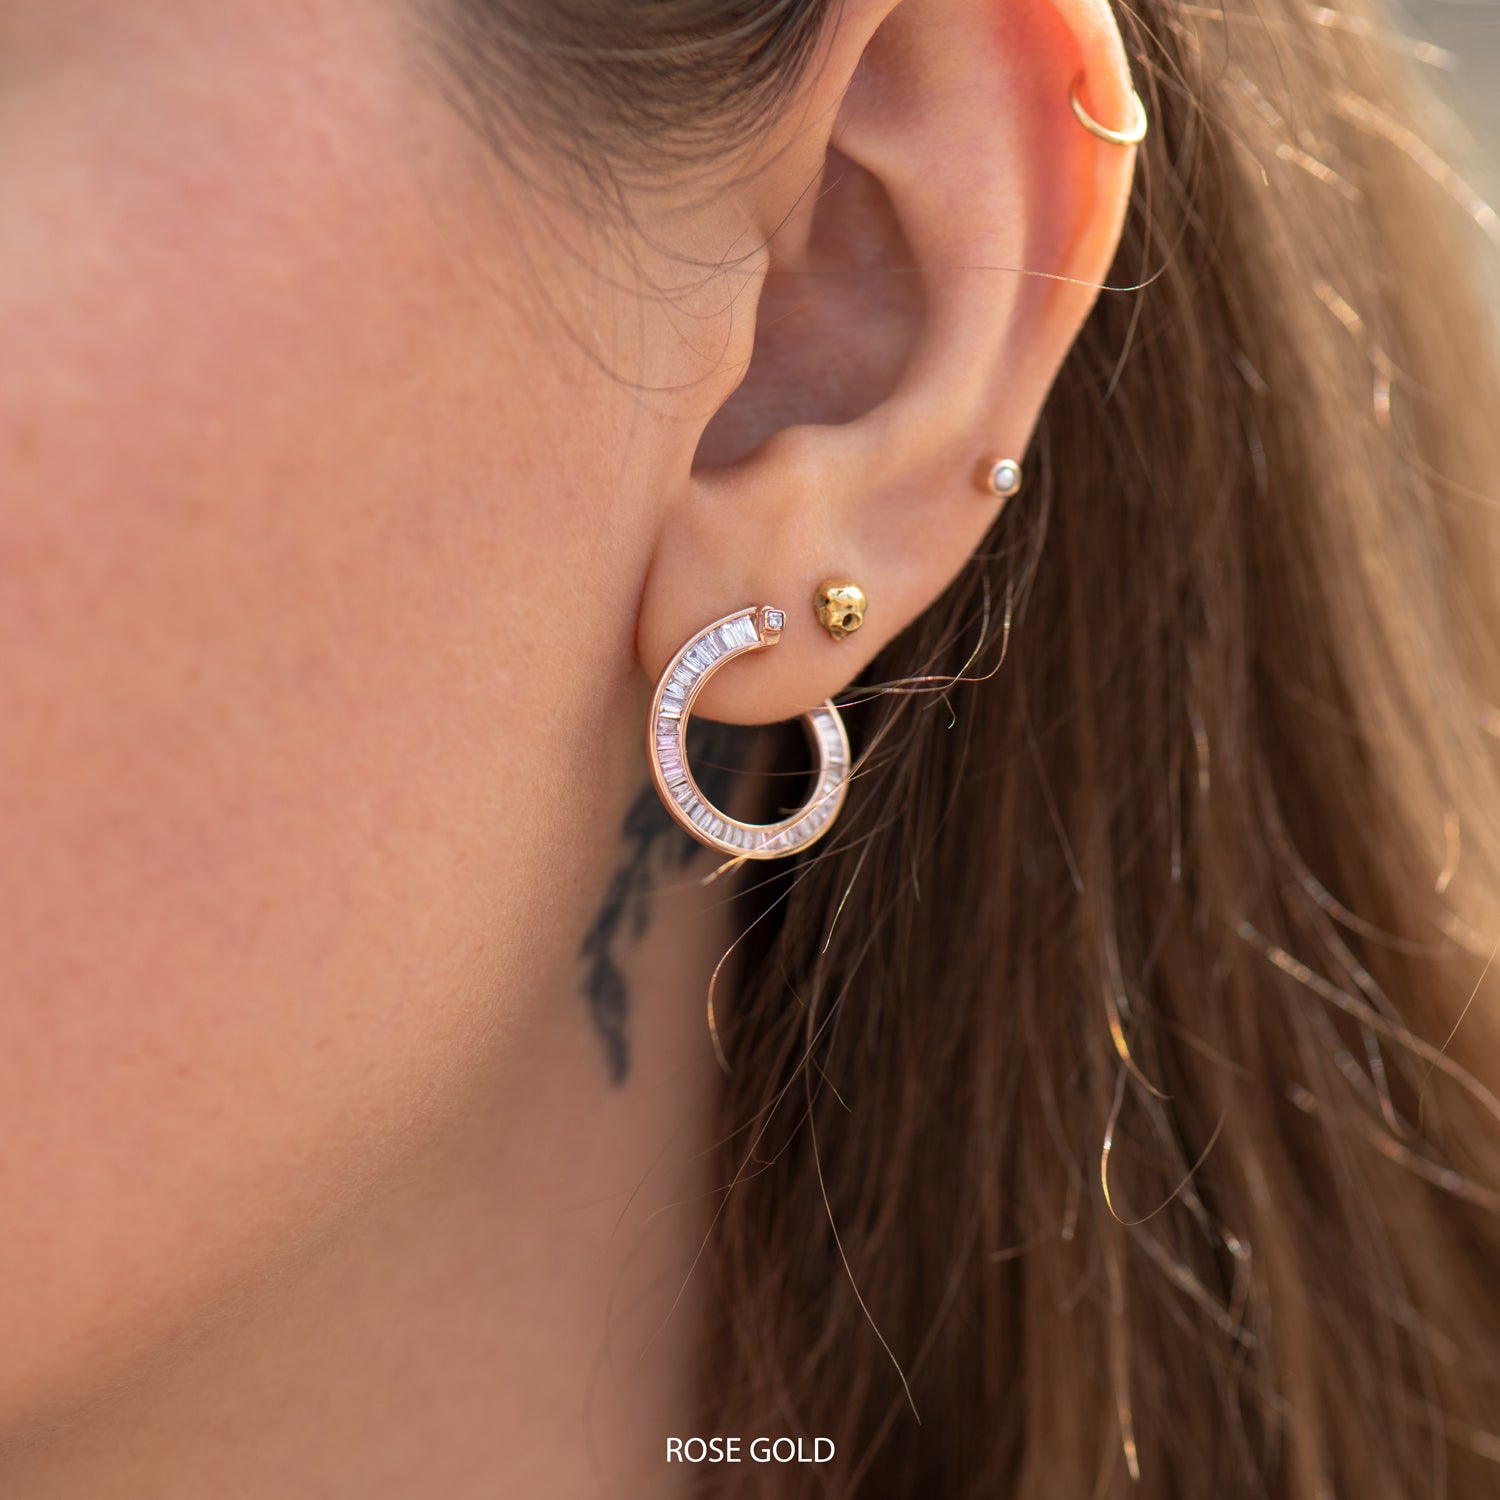 Skylar Earrings by Nea - Artisan jewelry handmade in Canada